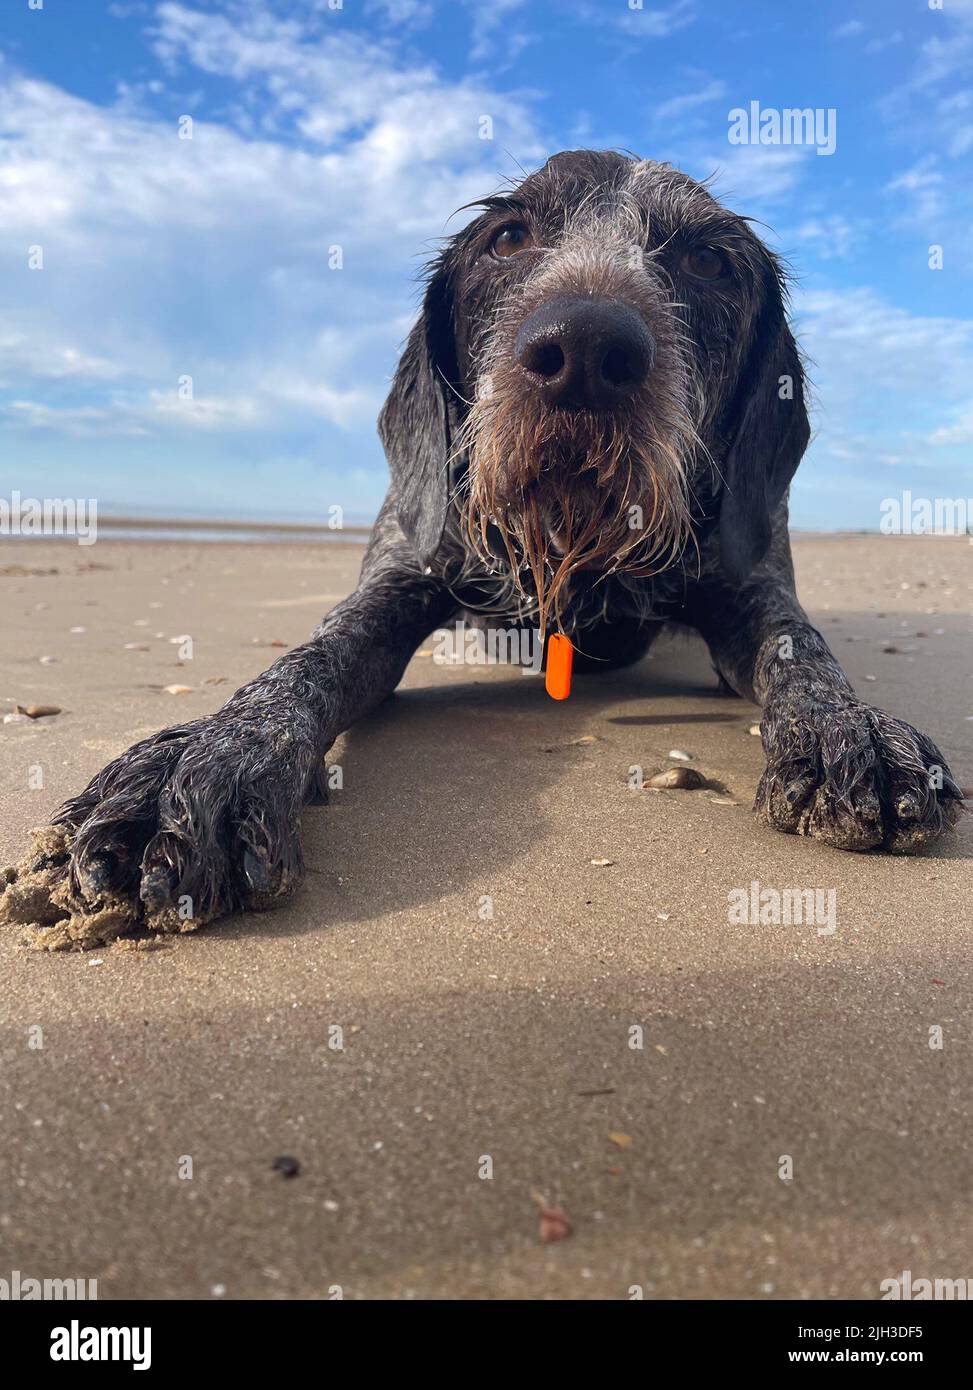 Foto di Boo, un puntatore tedesco Wirehaired di sei anni, che si rilassa sulla spiaggia durante questa ondata di caldo. L'RSPCA sta esortando i proprietari di animali domestici a pianificare la protezione degli animali durante questo periodo di tempo caldo. Data di emissione: Giovedì 14 luglio 2022. Foto Stock